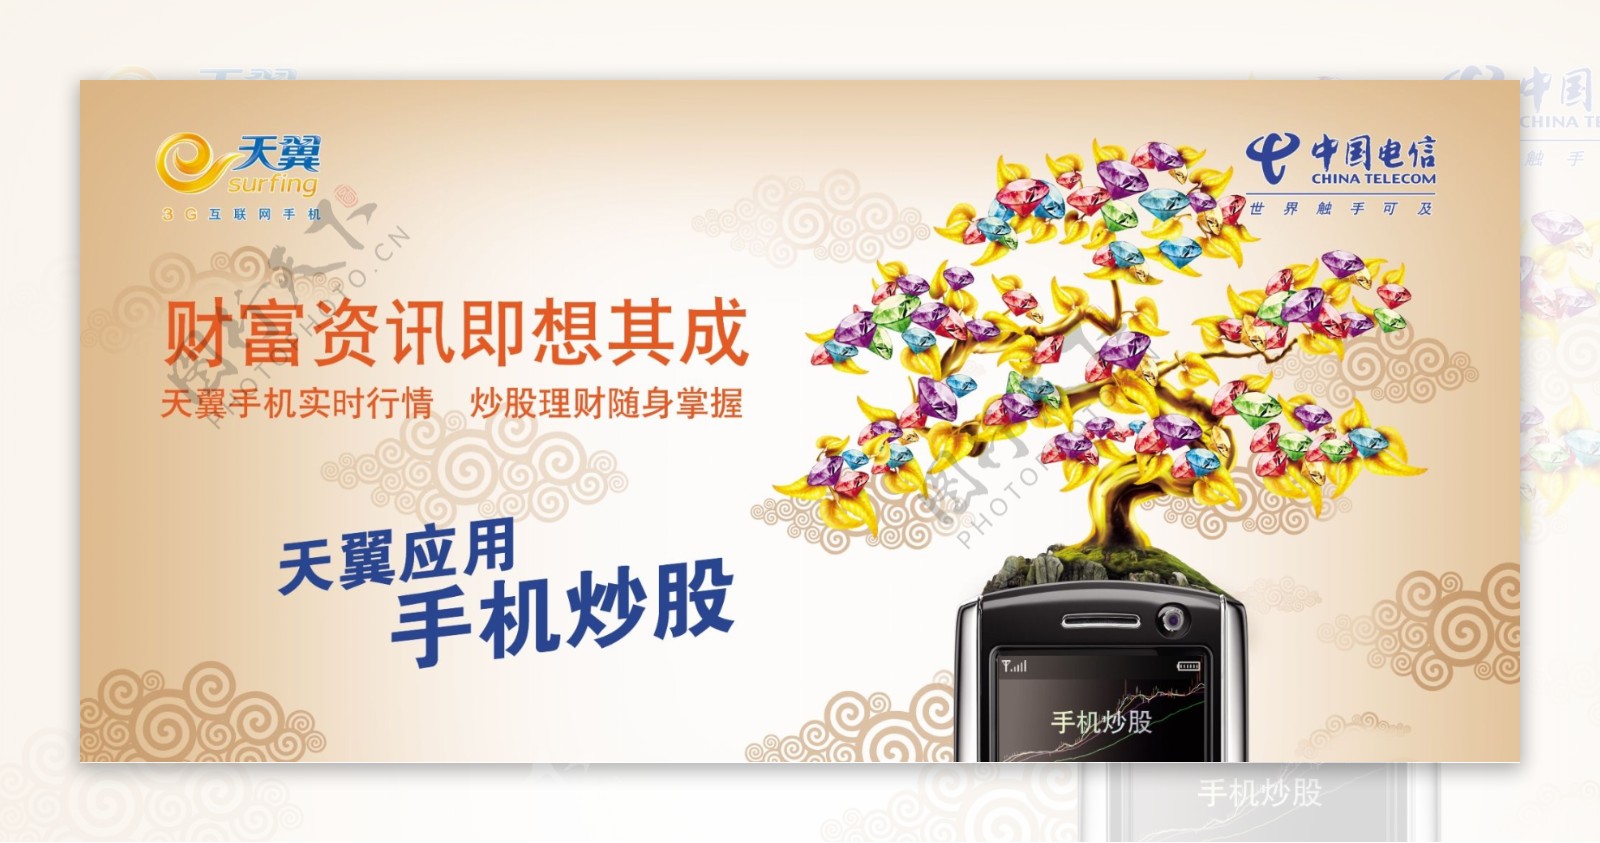 中国电信户外宣传广告天翼live平面广告天翼live手机炒股图片